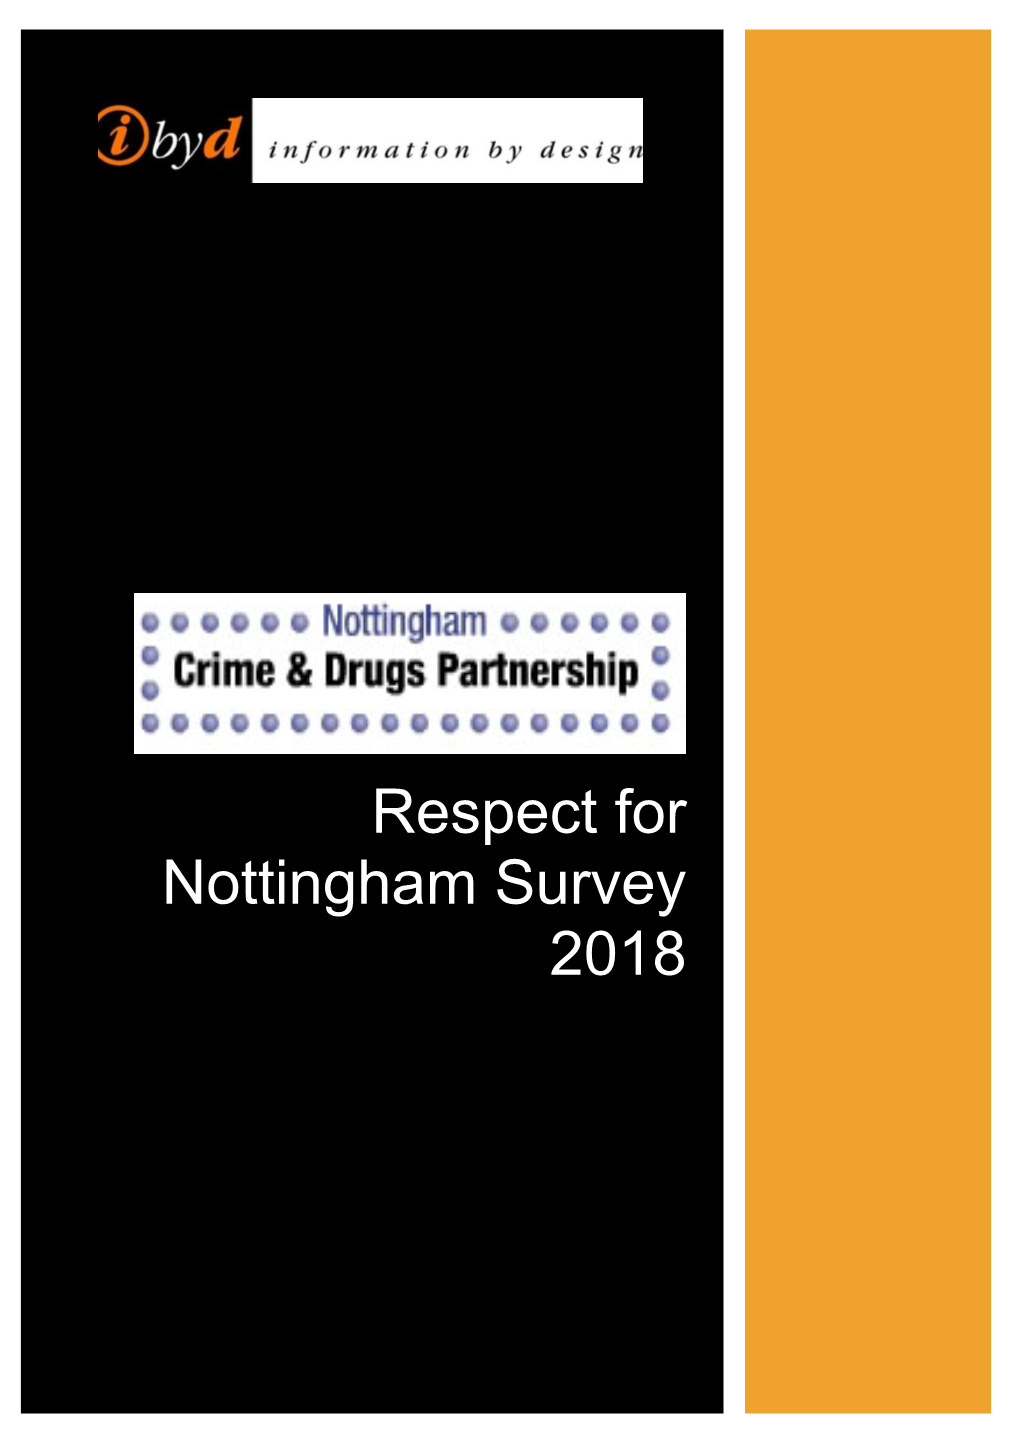 Respect for Nottingham Survey 2018